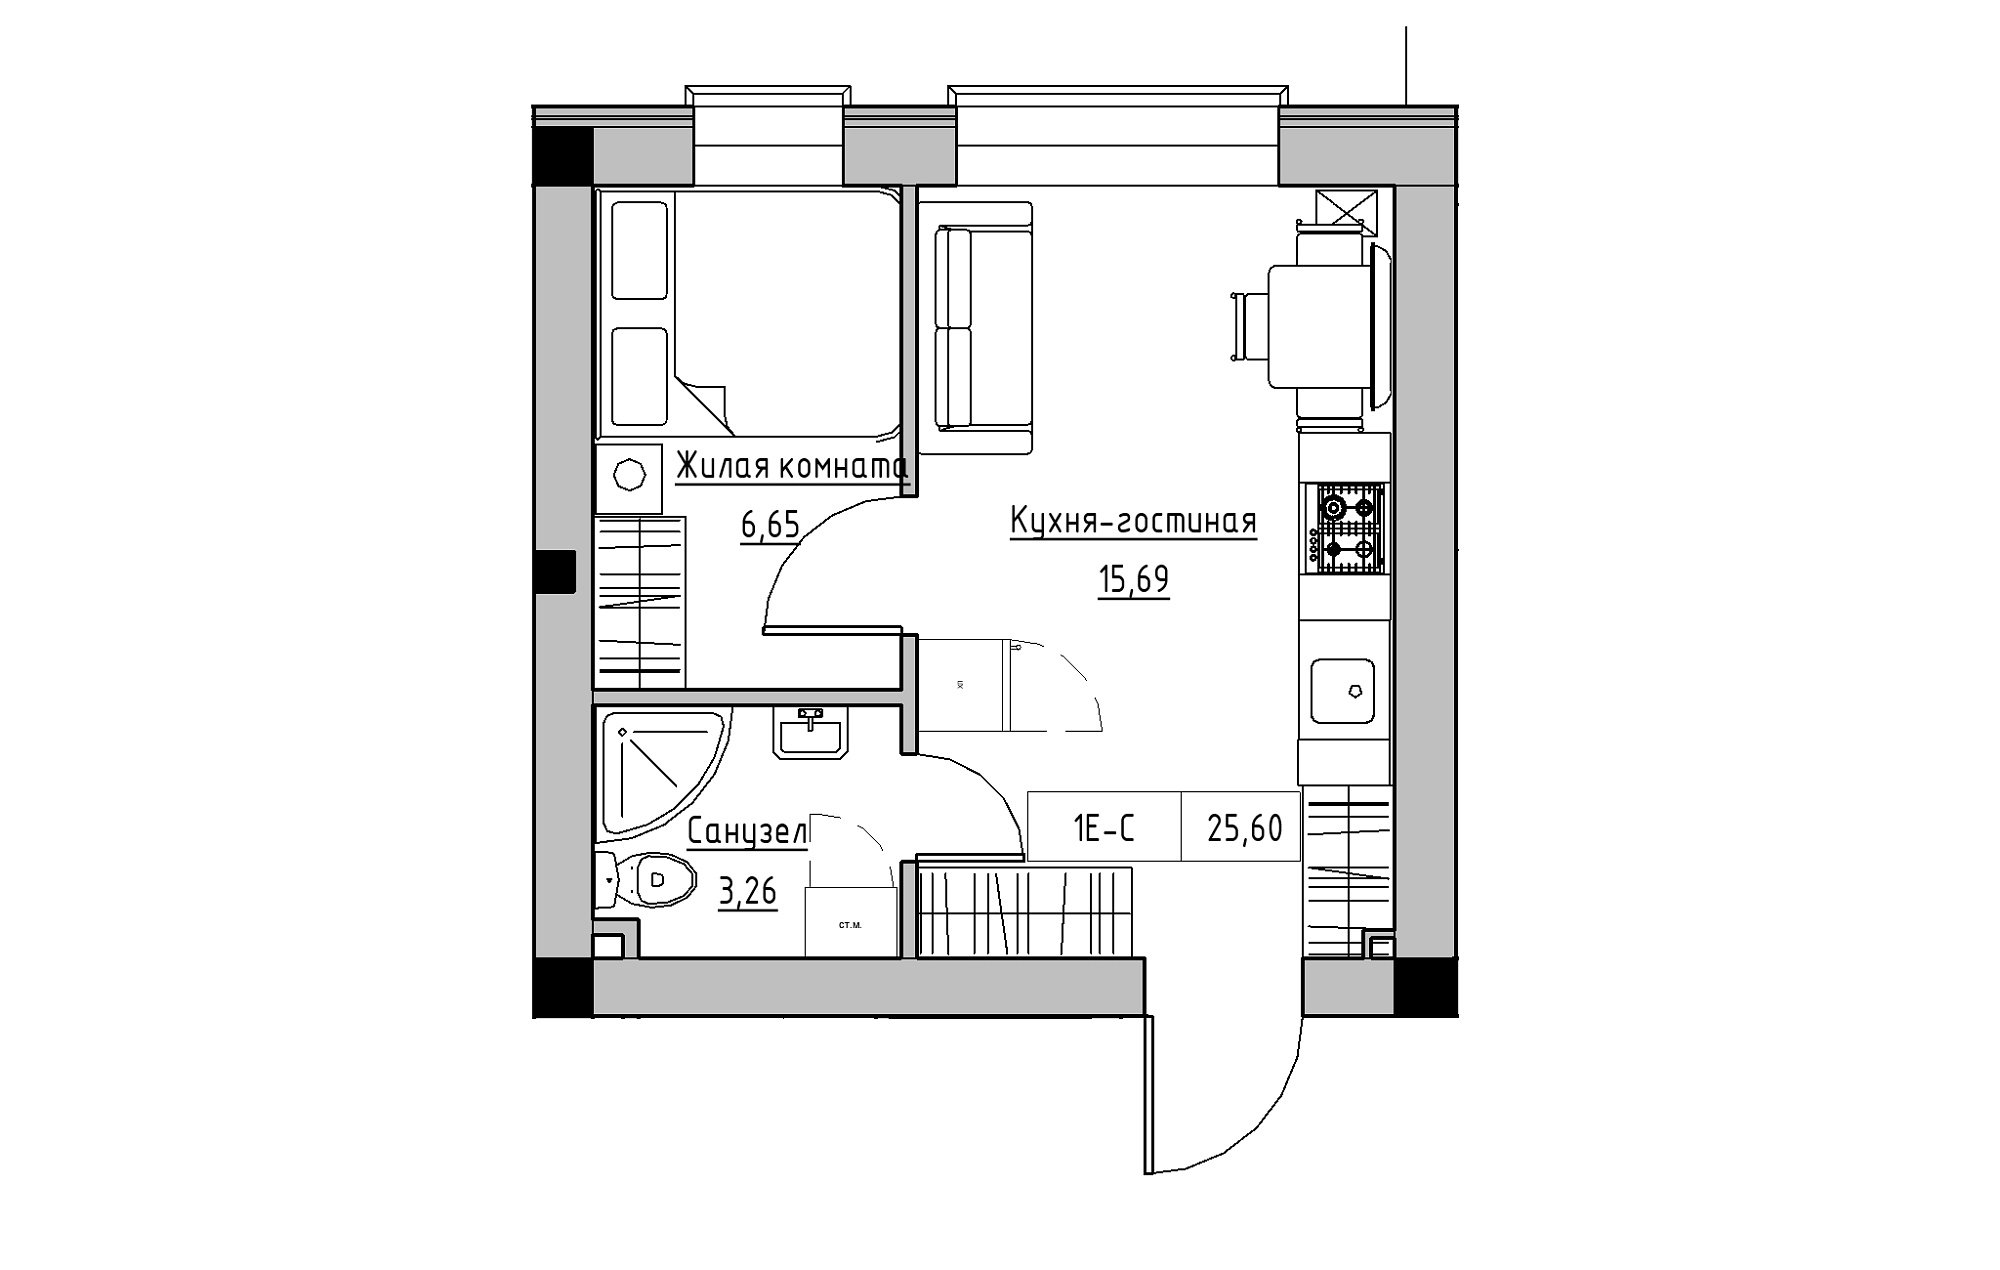 Планування 1-к квартира площею 25.6м2, KS-018-05/0004.